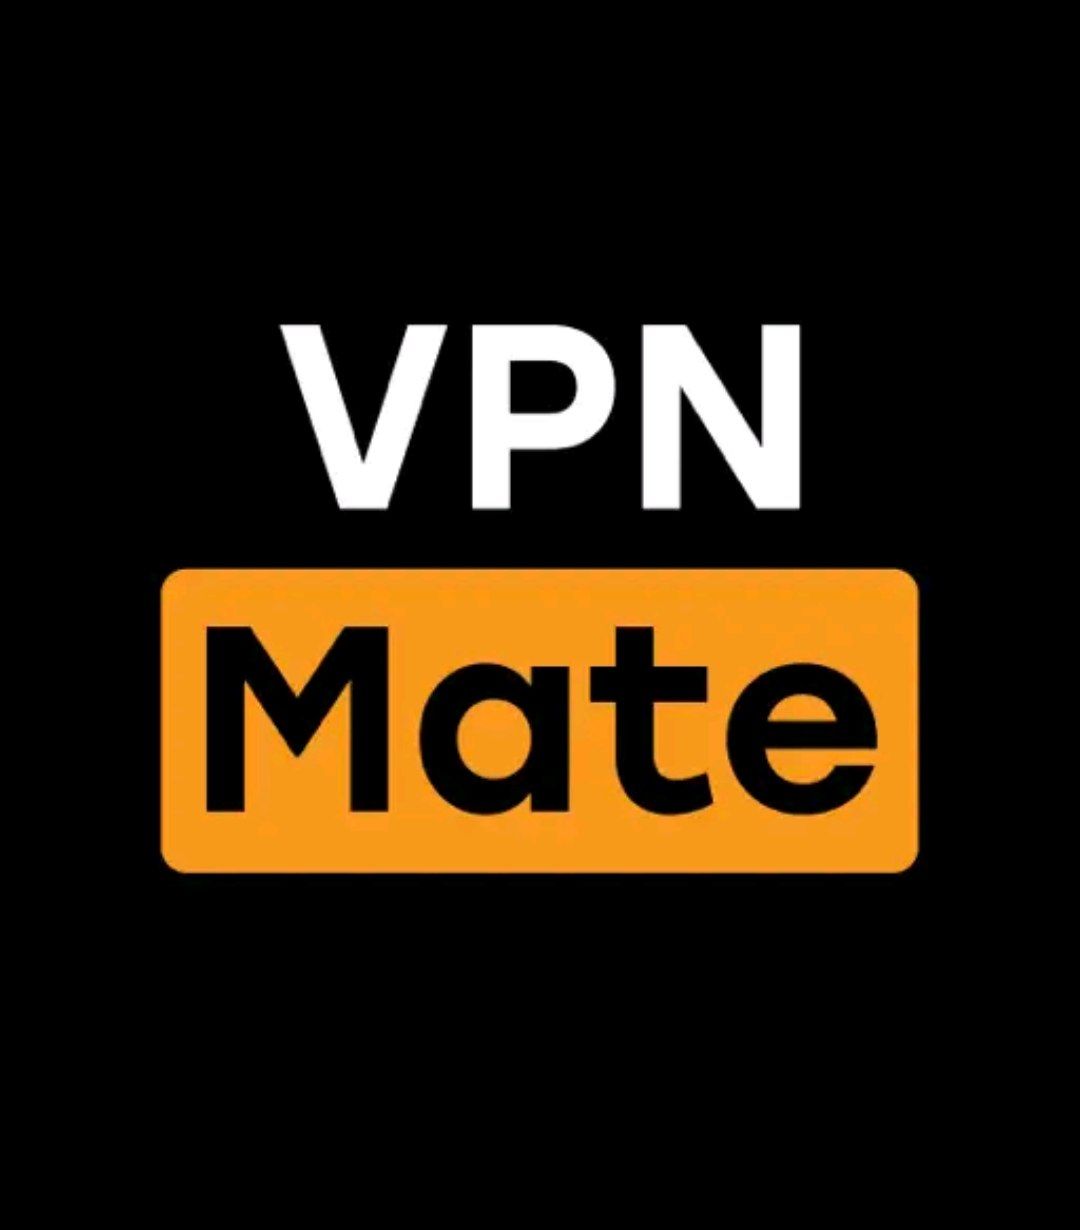 فیلم اتصال به برنامه Mate VPN در گوشی همراه